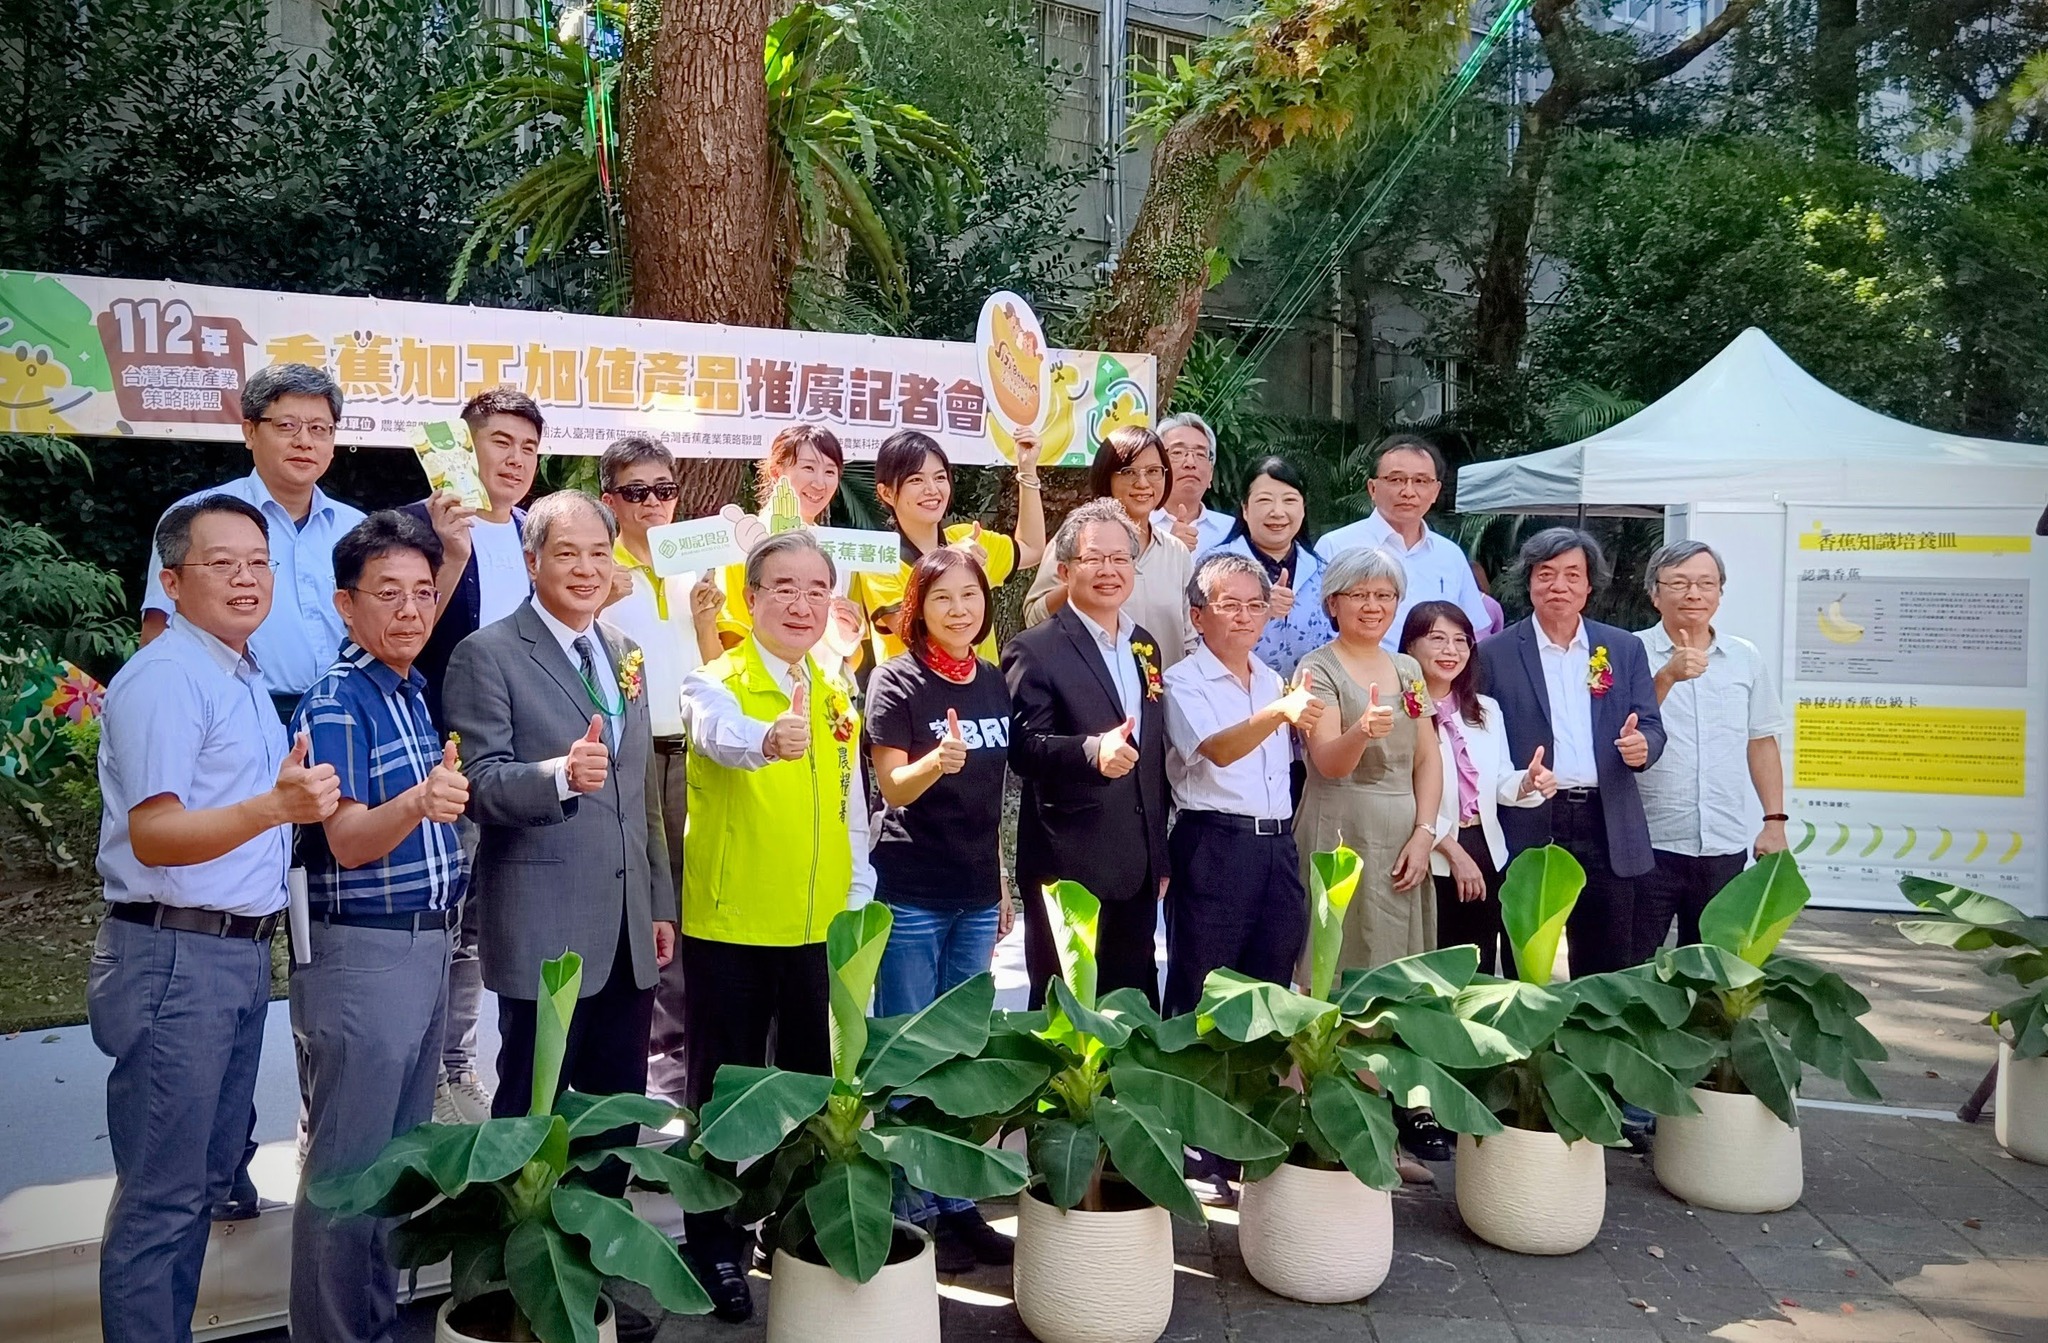 Taiwan Banana Research Institute, badan hukum, baru-baru ini mengadakan konferensi pers tentang produk bernilai tambah pengolahan pisang, dengan fokus pada pengembangan produk pengolahan pisang hijau baru.  (Sumber foto : Taiwan Banana Research Institute)